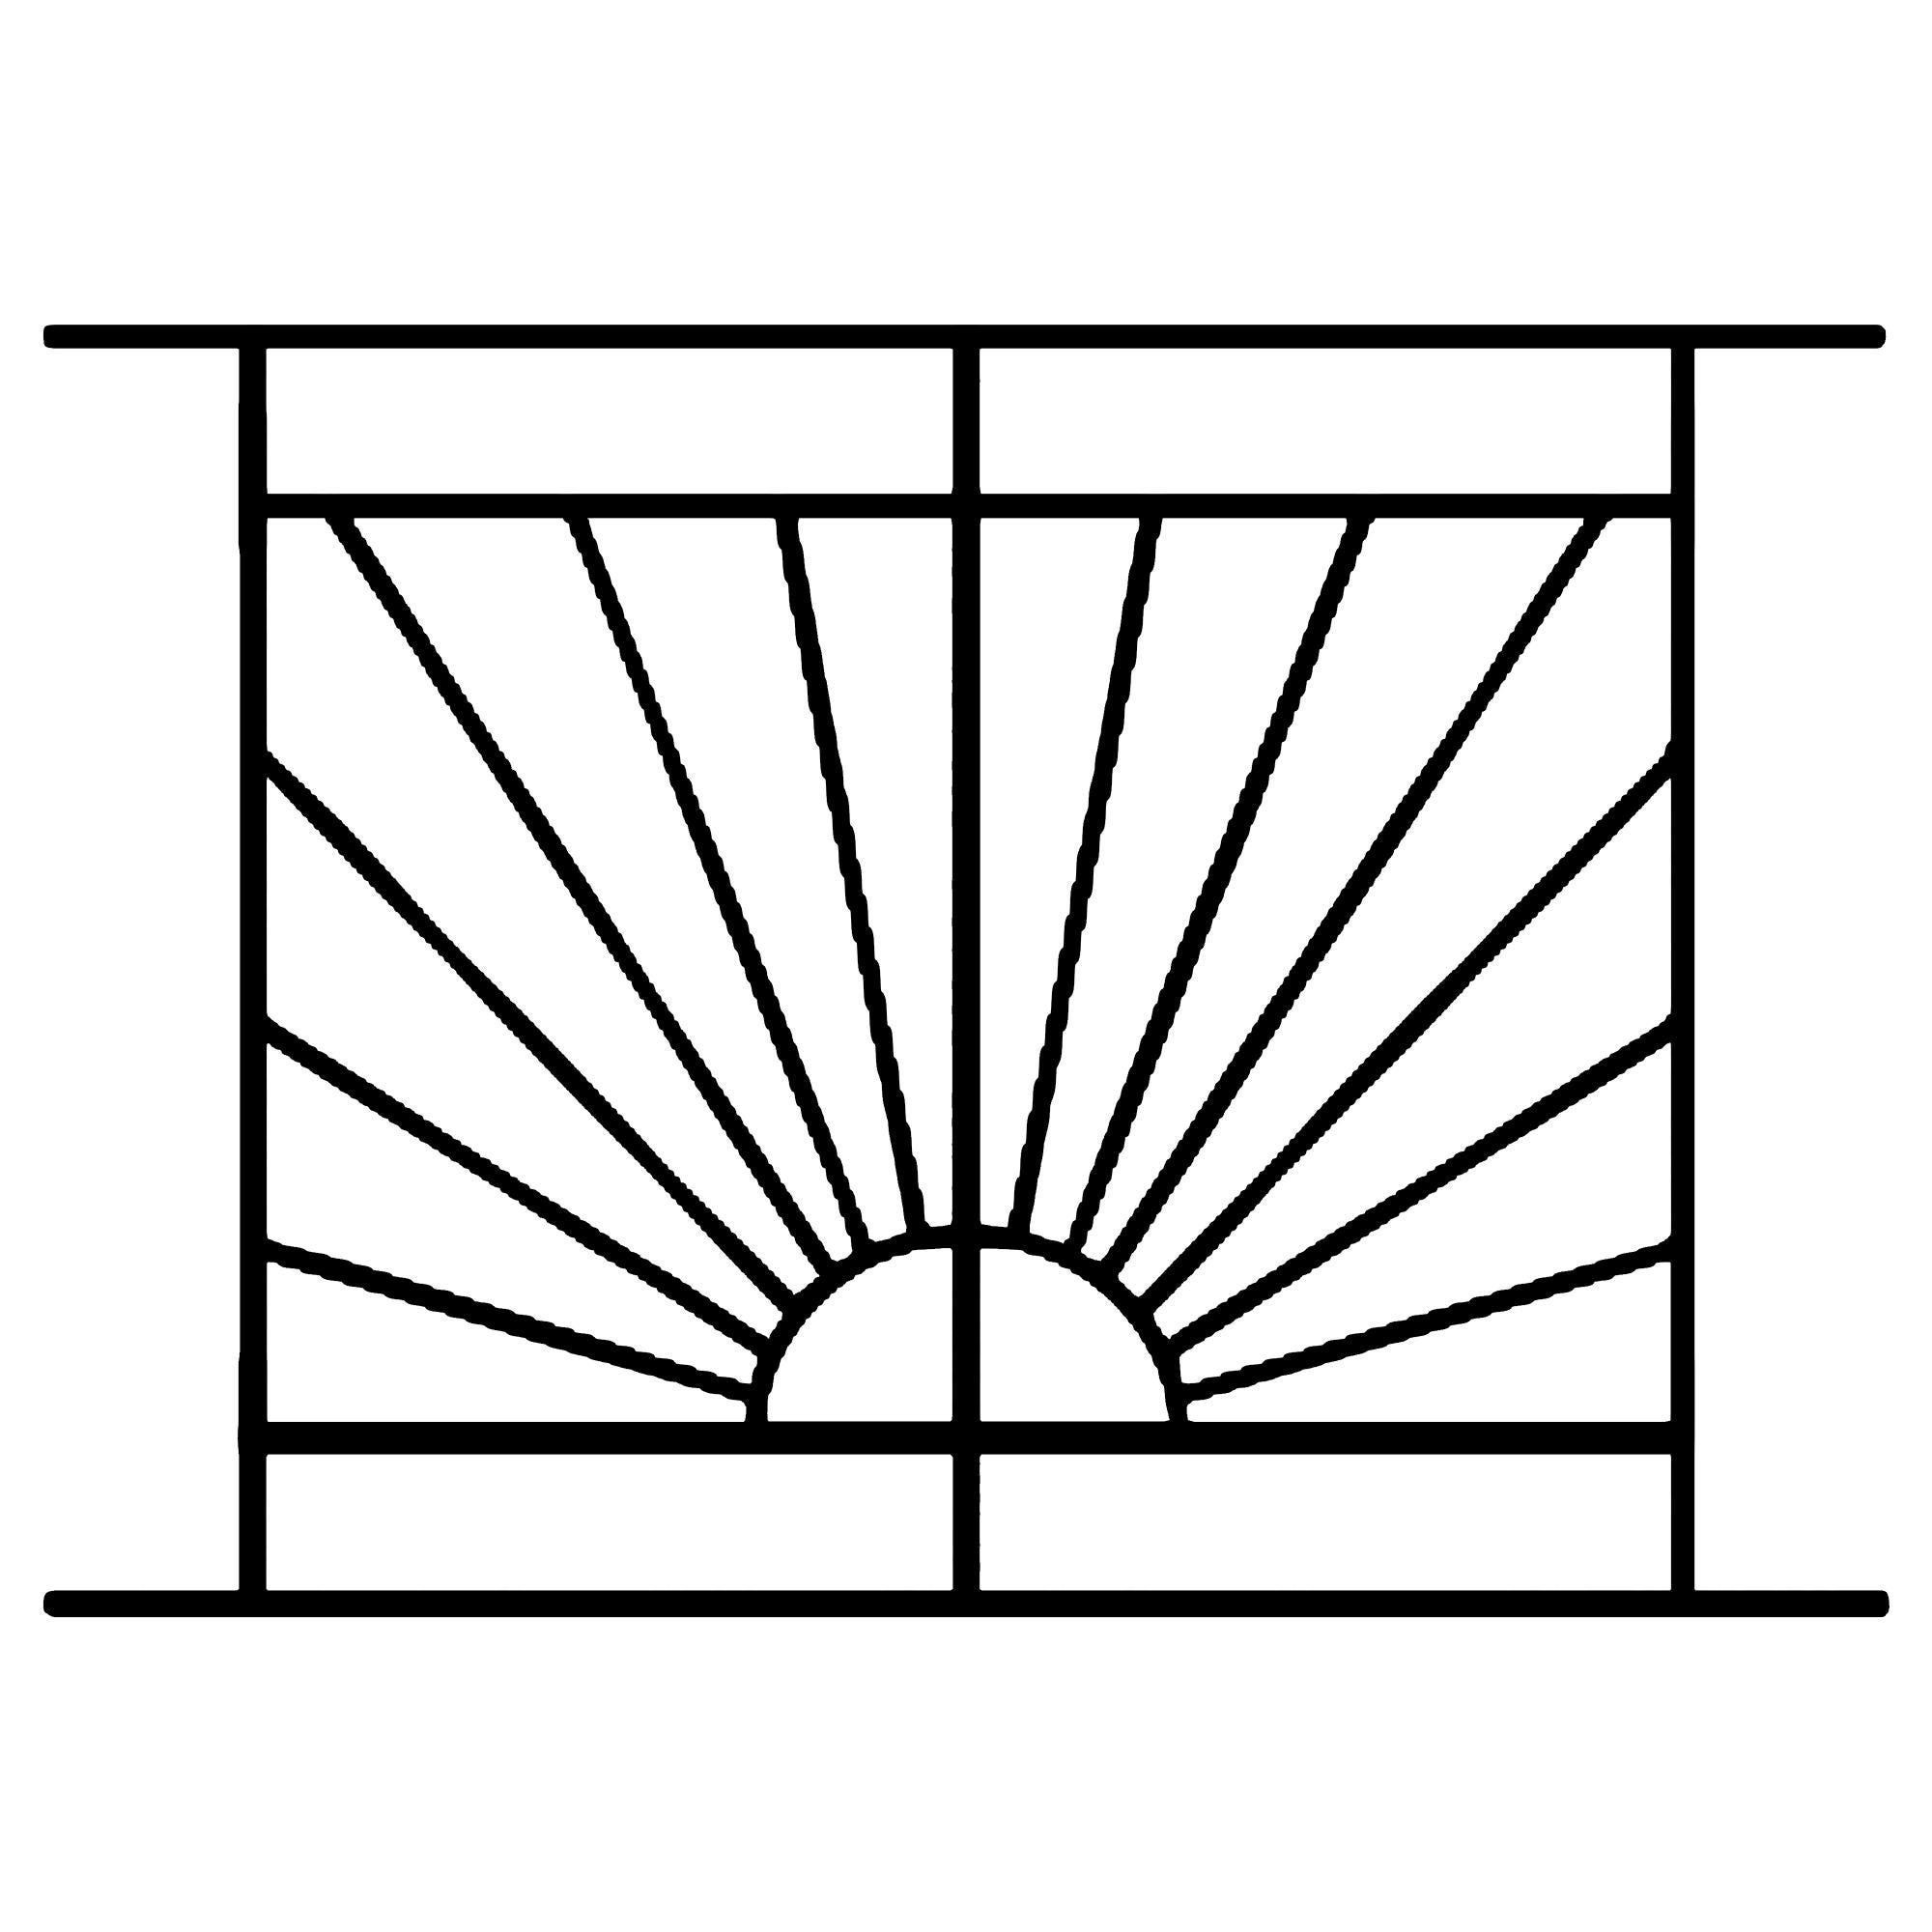 Grille de Defense Soleil pour Fenetre H= 105 cm x L= 140 cm (côte tableau) 1